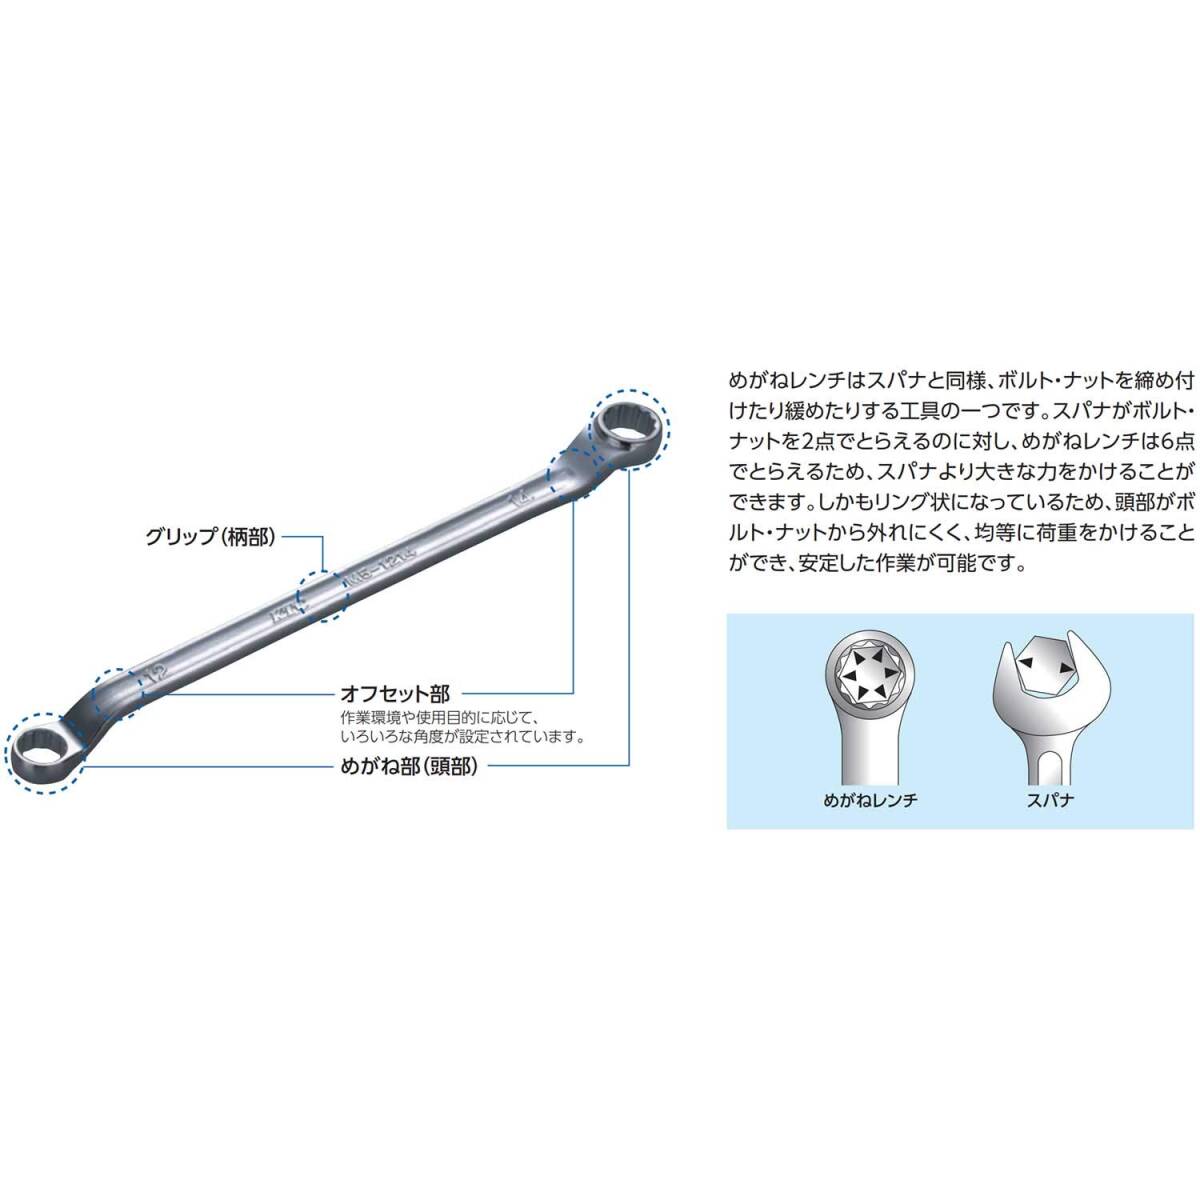 【特価商品】京都機械工具(KTC) 超ロングストレートメガネレンチ M160-8X10_画像3